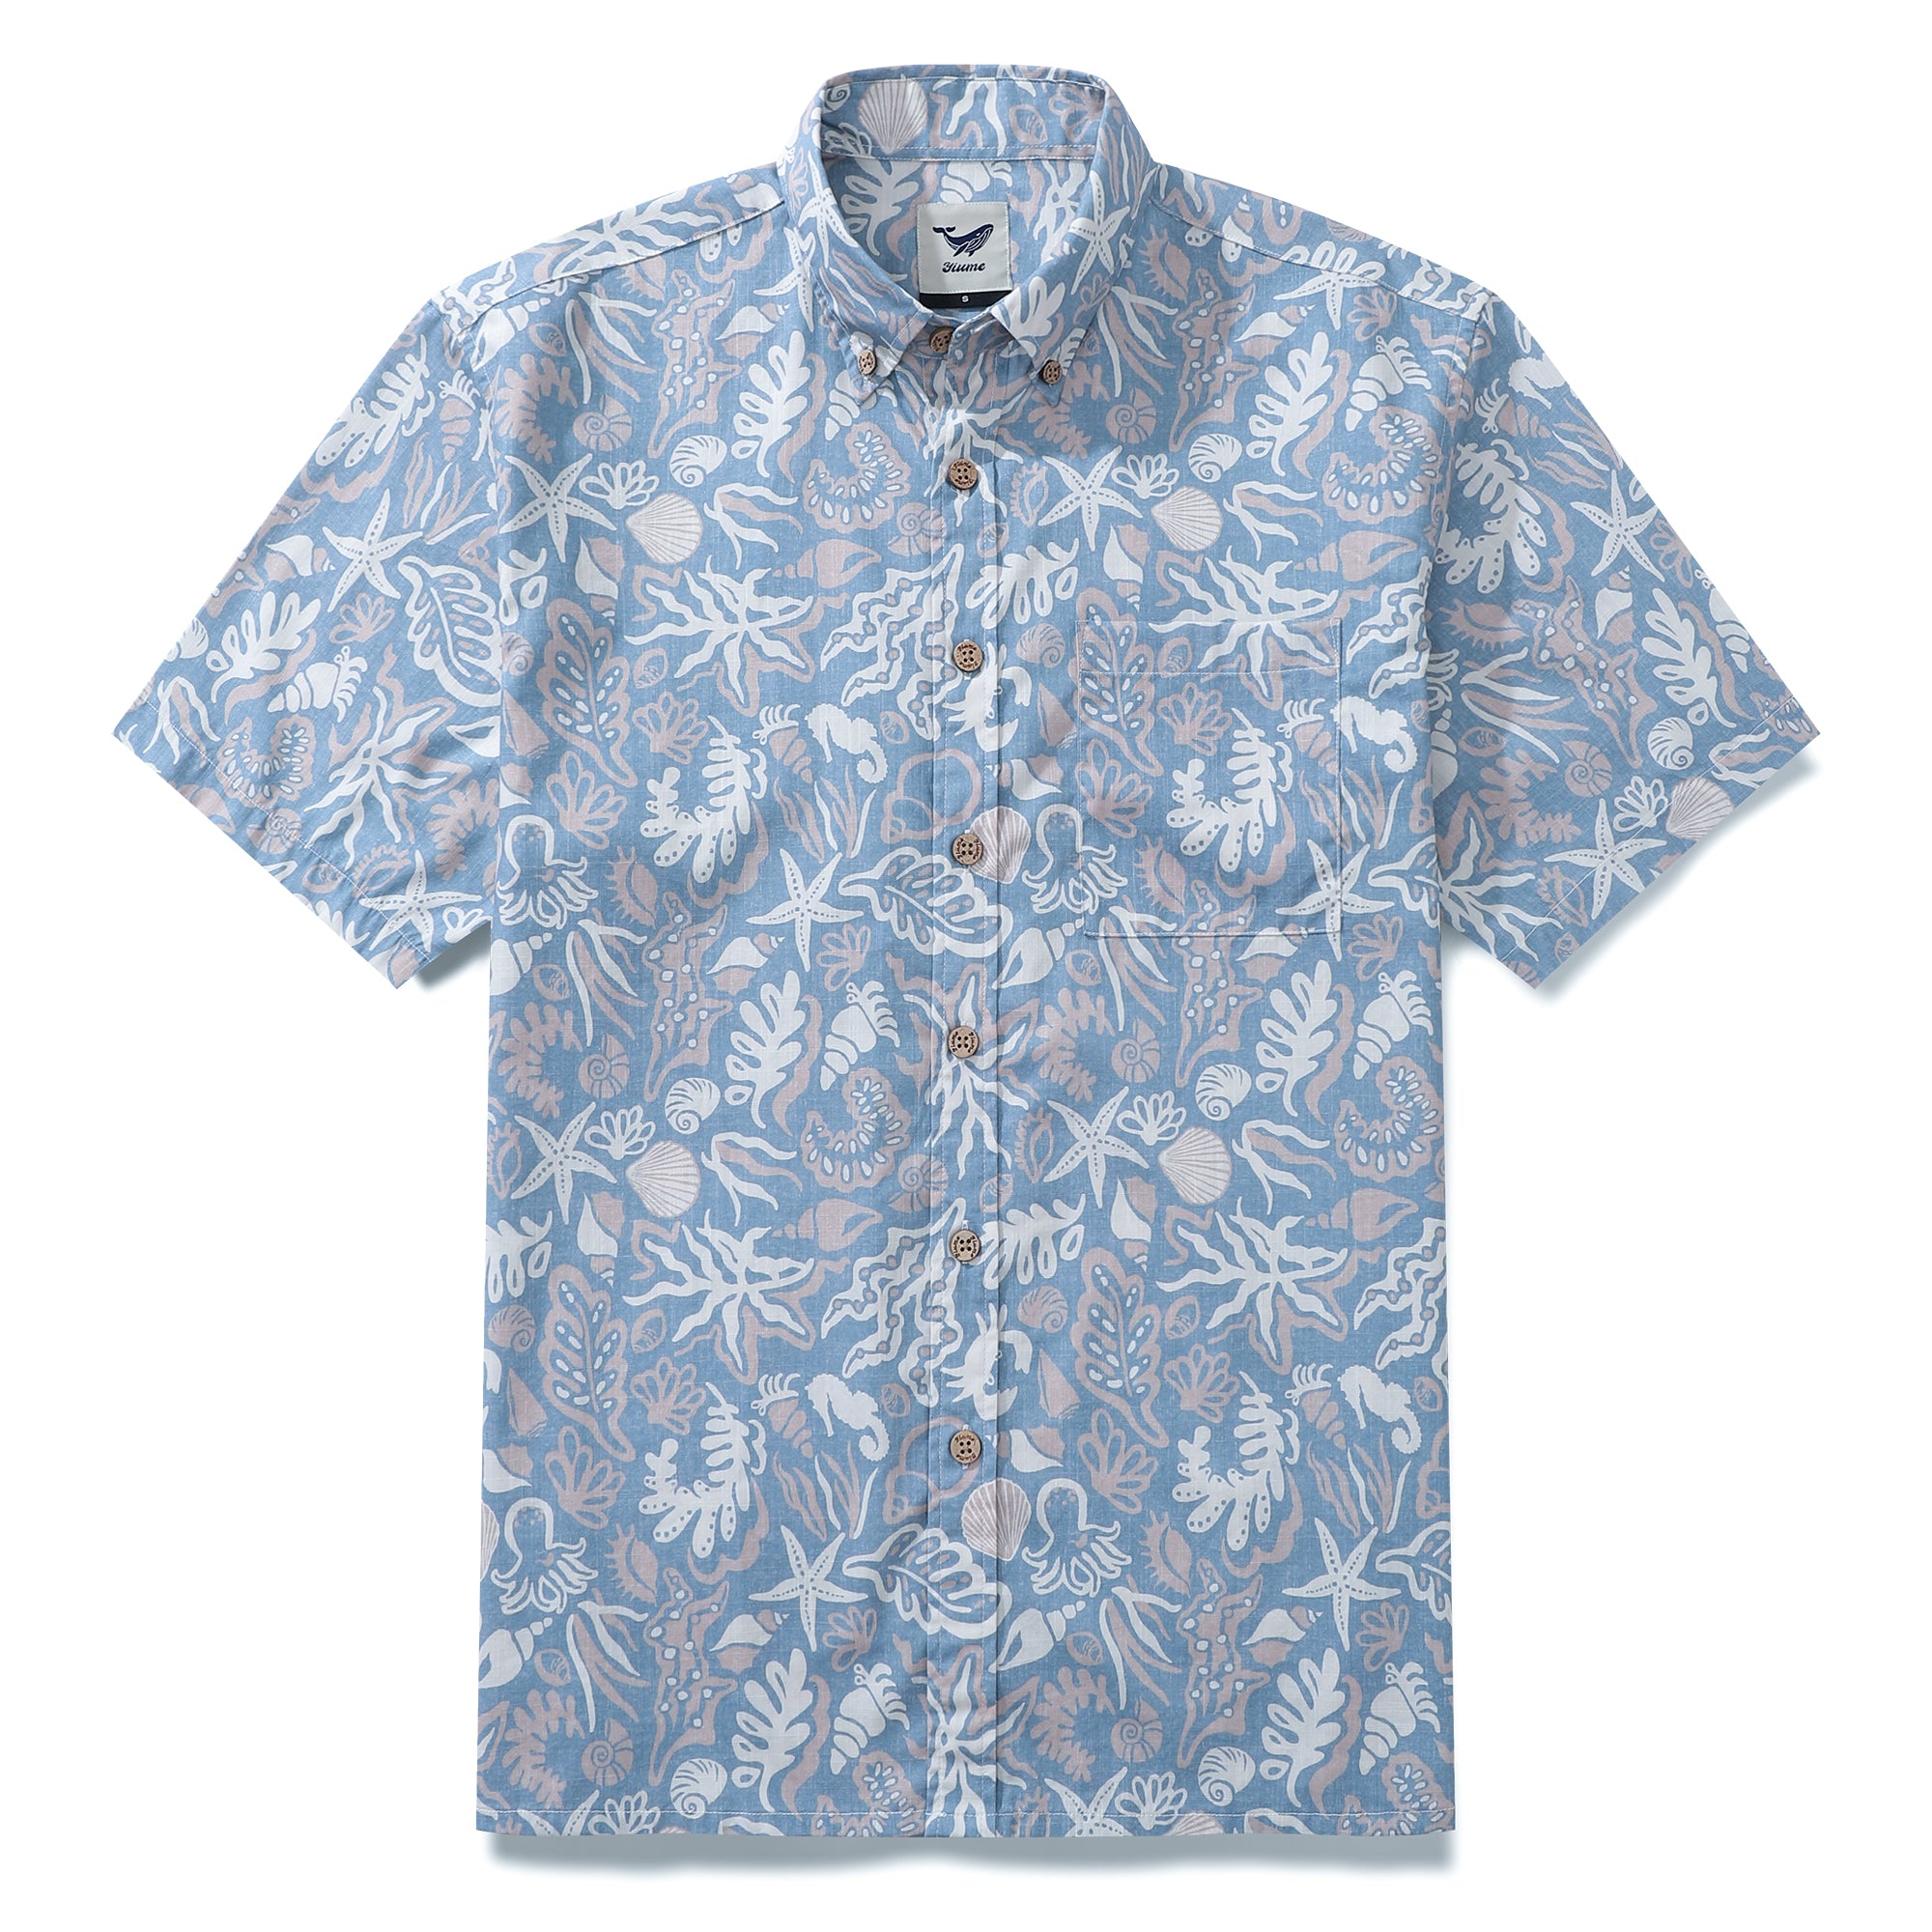 Yiume Camisas Hawaianas para Hombre Estampado Silueta Oceánica 100% Algodón Manga Corta - Azul